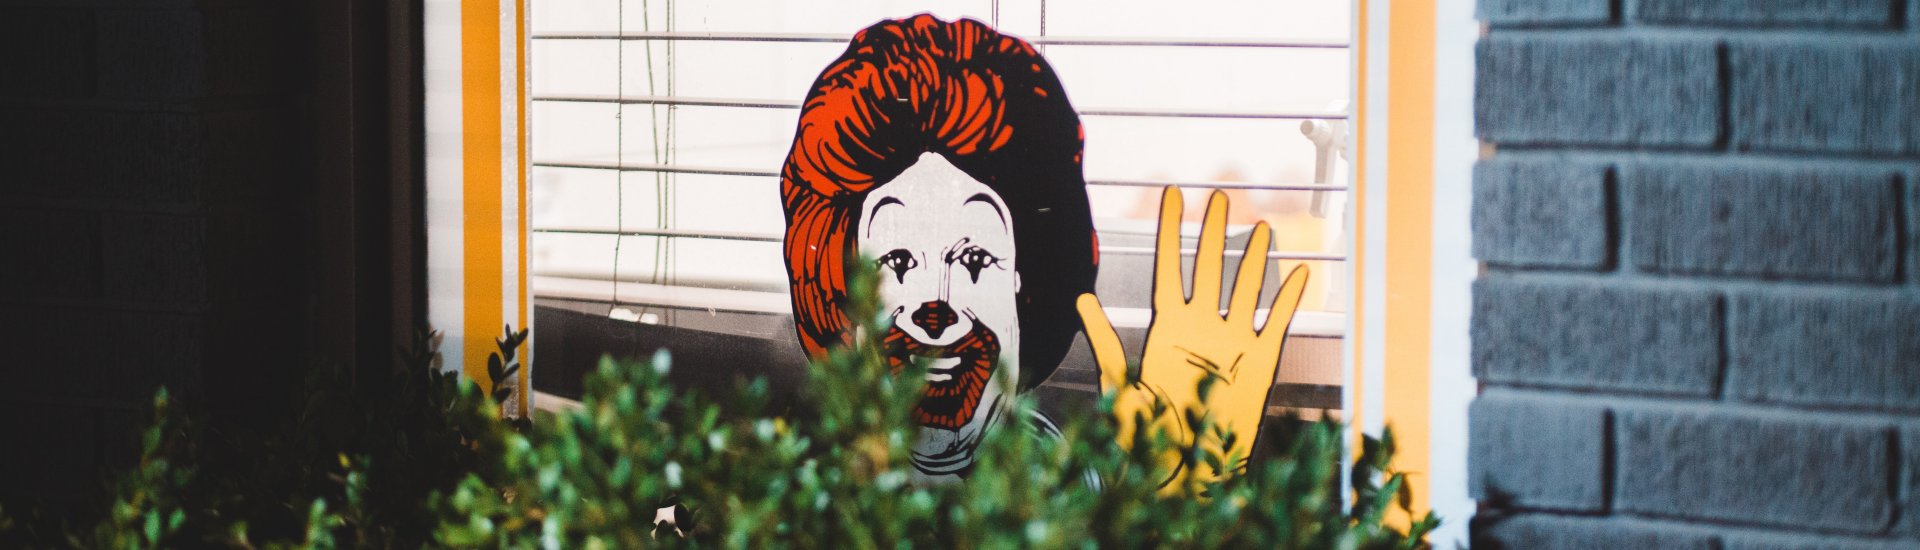 Een afbeelding van de clown Ronald McDonald.